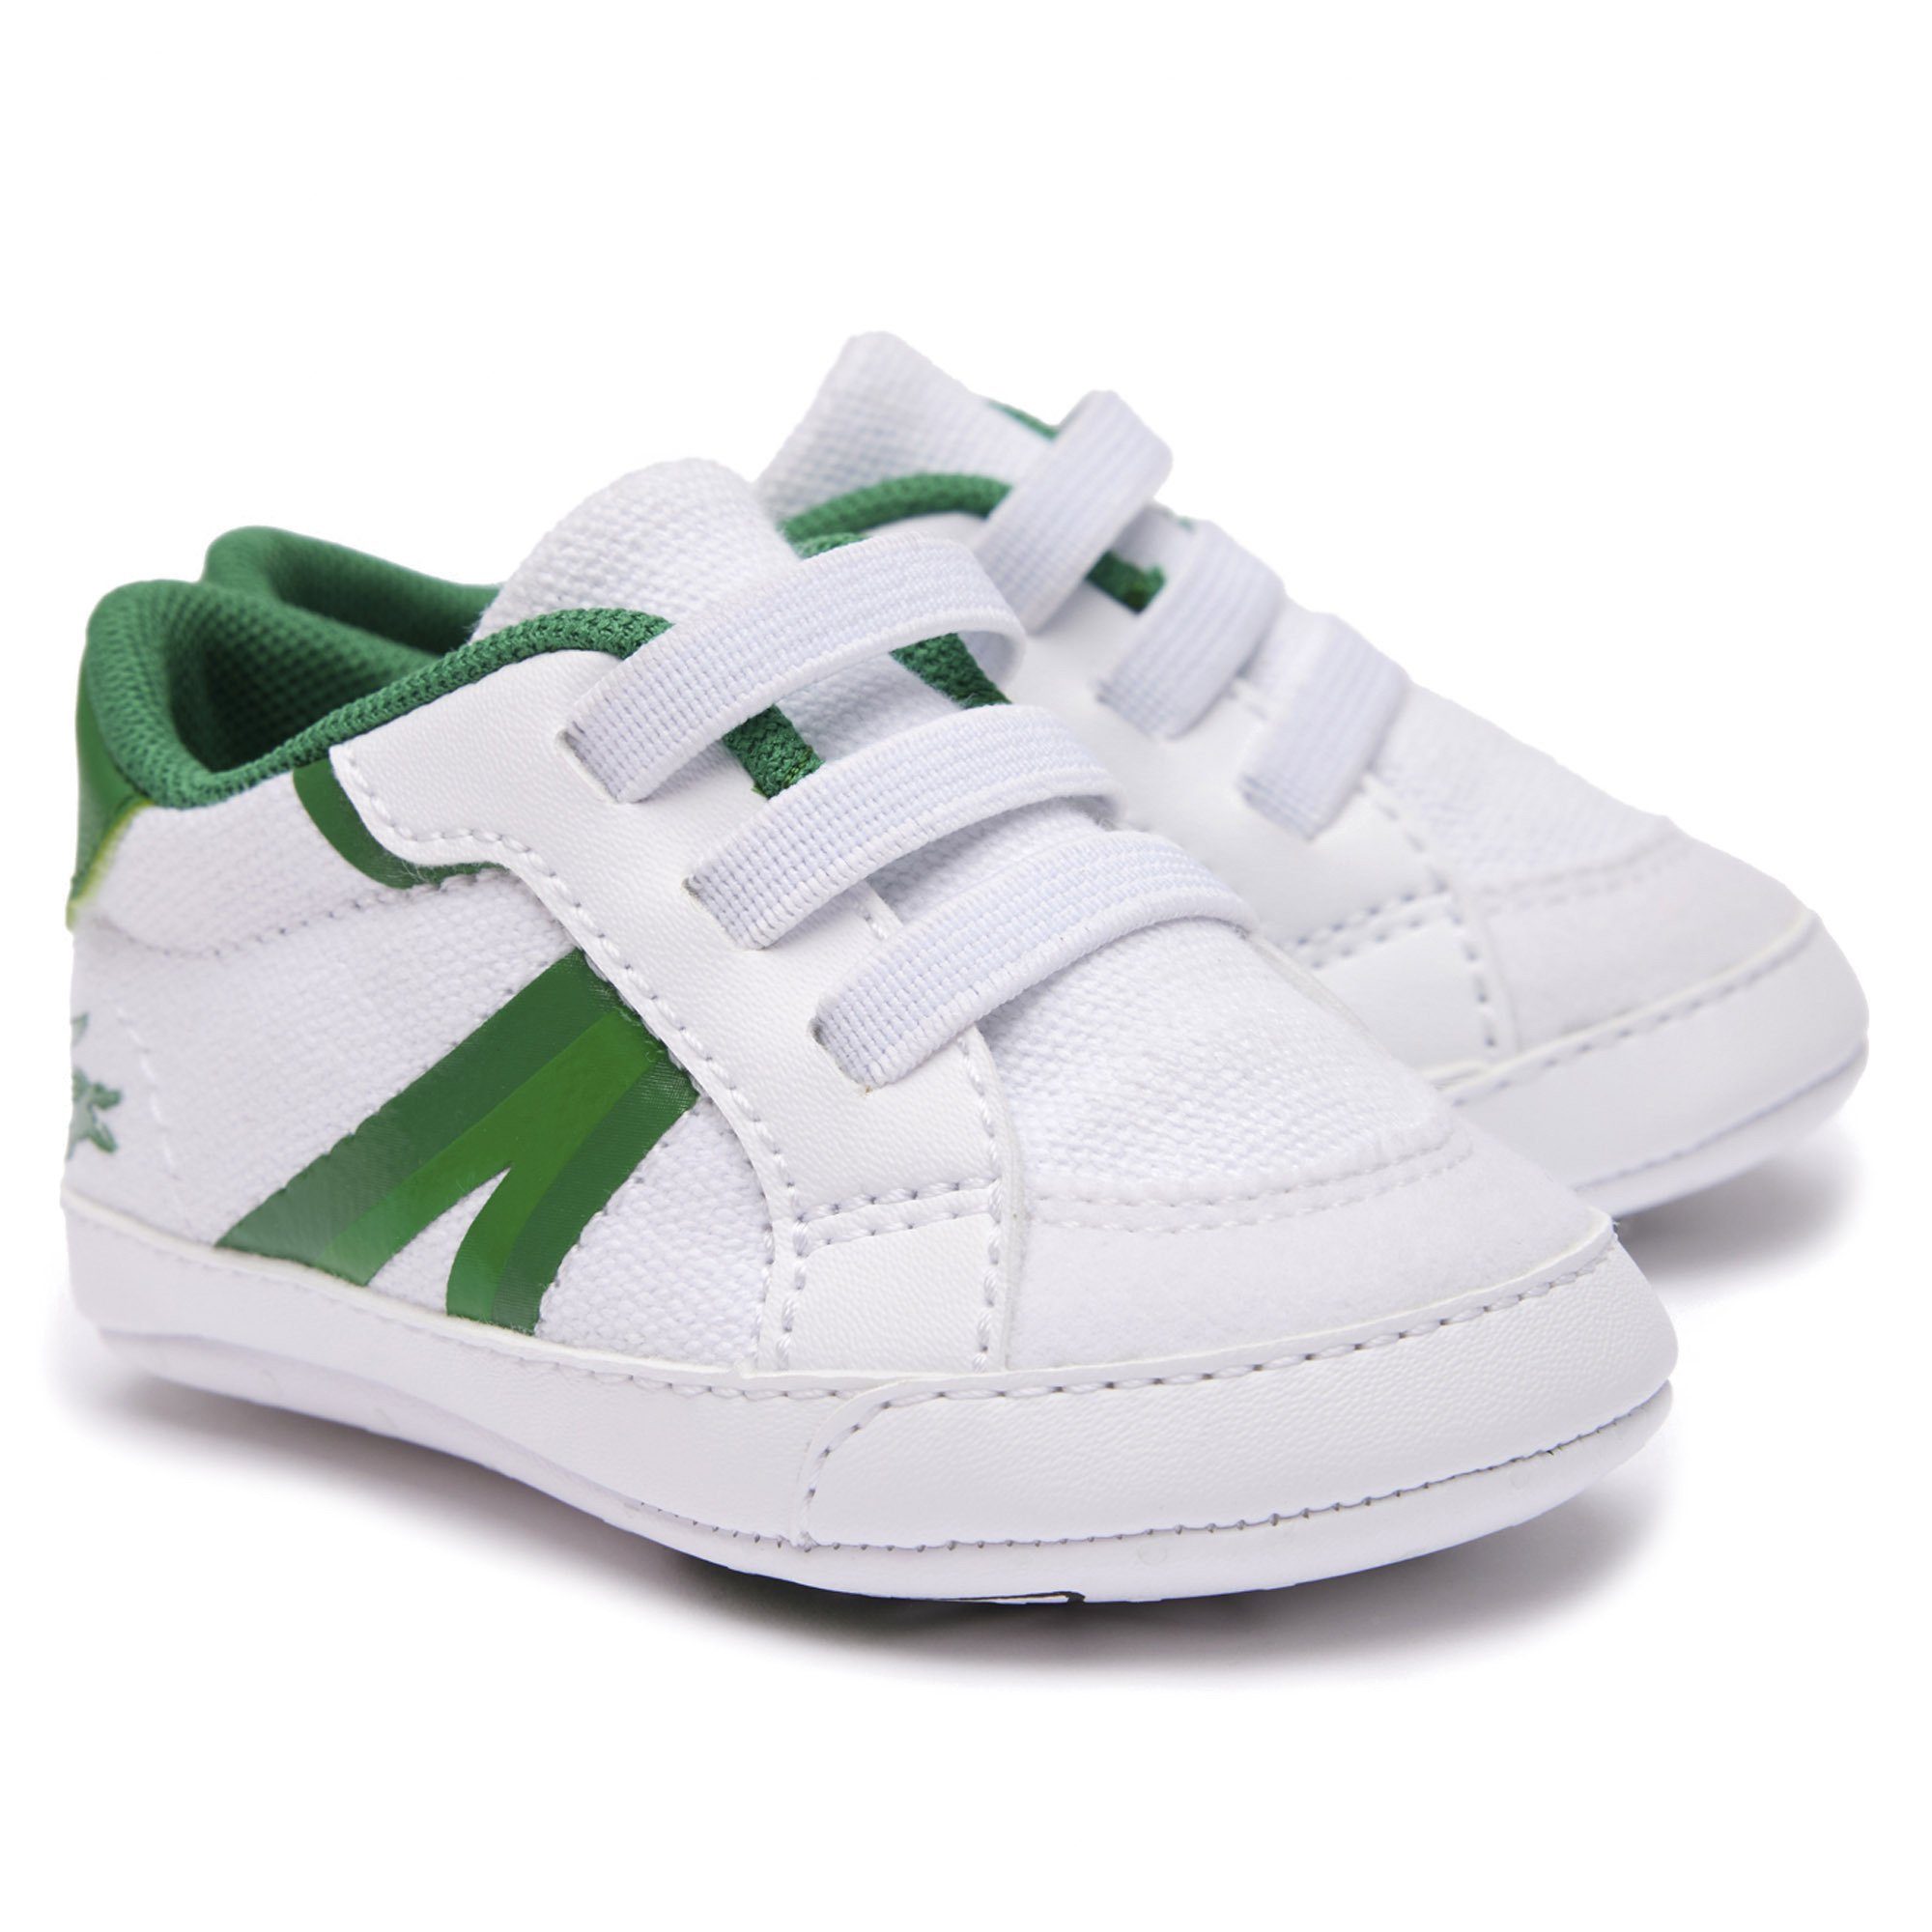 Lacoste Baby Schuhe - L004 Cub, Krabbelschuhe, Sneaker, Krabbelschuh Weiß/Grün